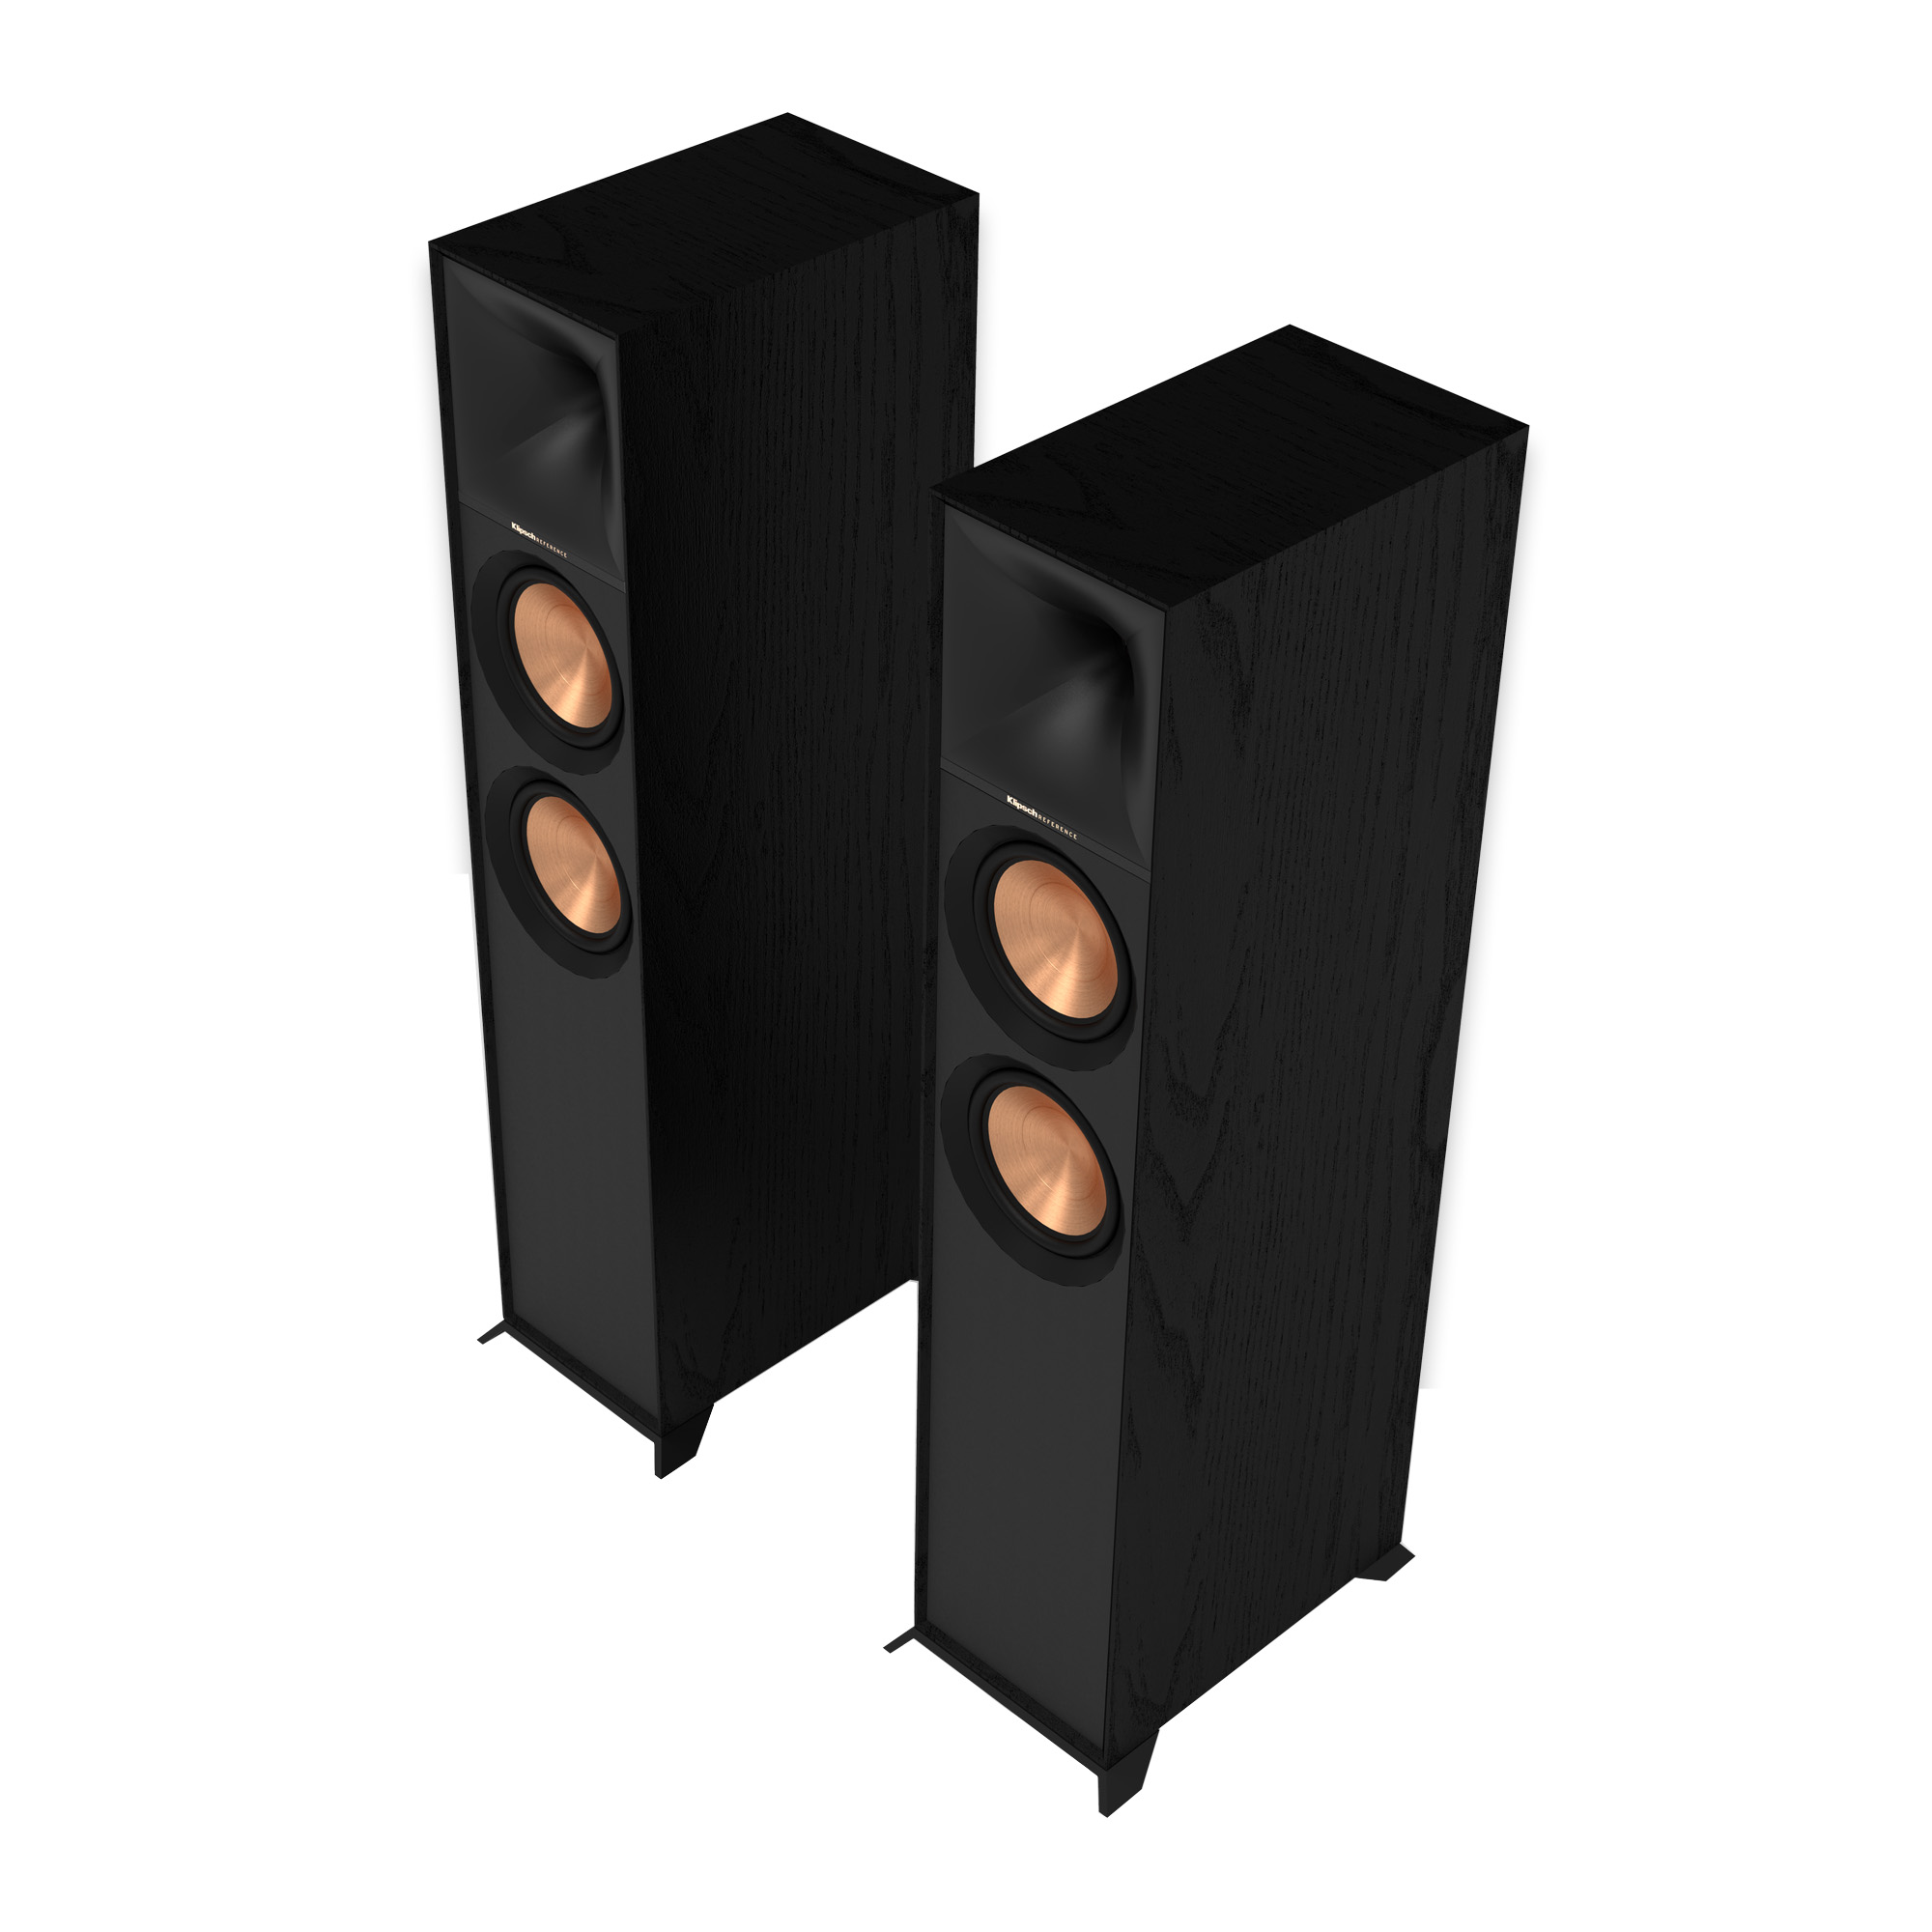 Напольная акустика Klipsch R-600F Black напольная акустика acoustic energy ae520 2019 american walnut wood veneer